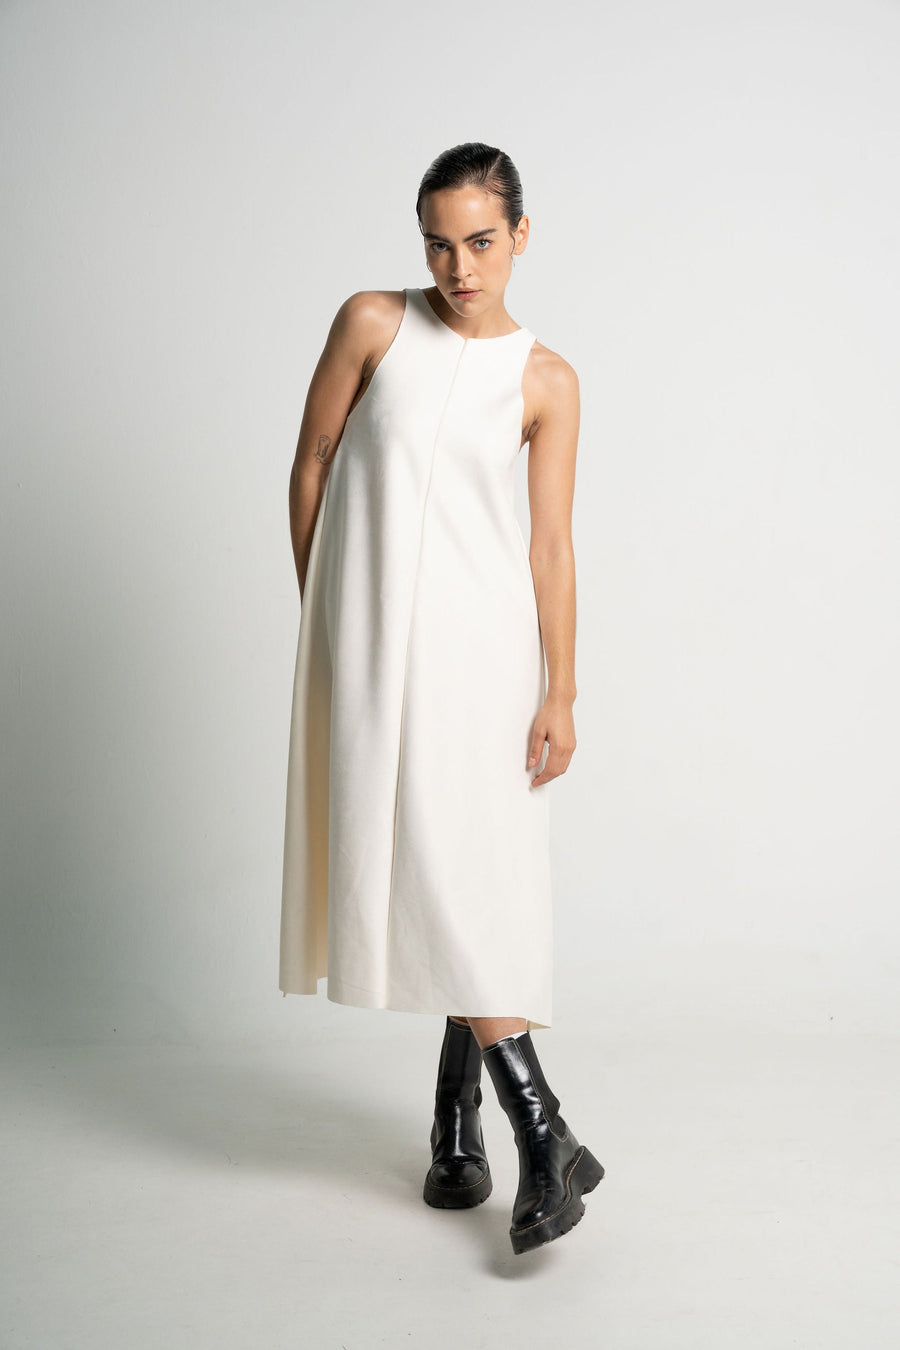 Siena Ivory dress